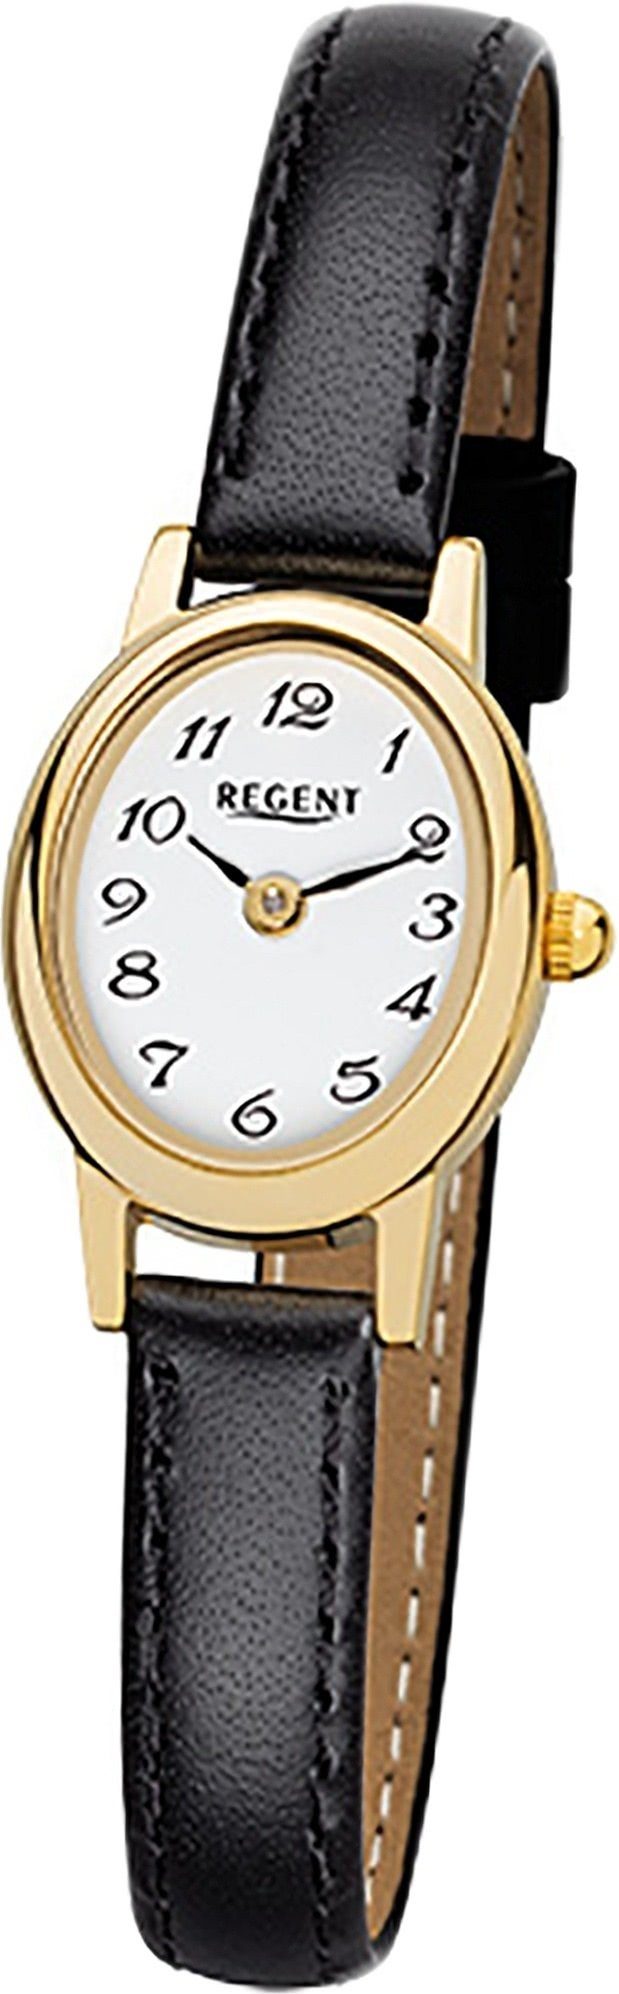 Regent Quarzuhr »D2URF977 Regent Leder Damen Uhr F-977 Quarzuhr«,  (Analoguhr), Damenuhr mit Lederarmband, ovales Gehäuse, klein (ca.  18x21mm), Elegant-Style online kaufen | OTTO